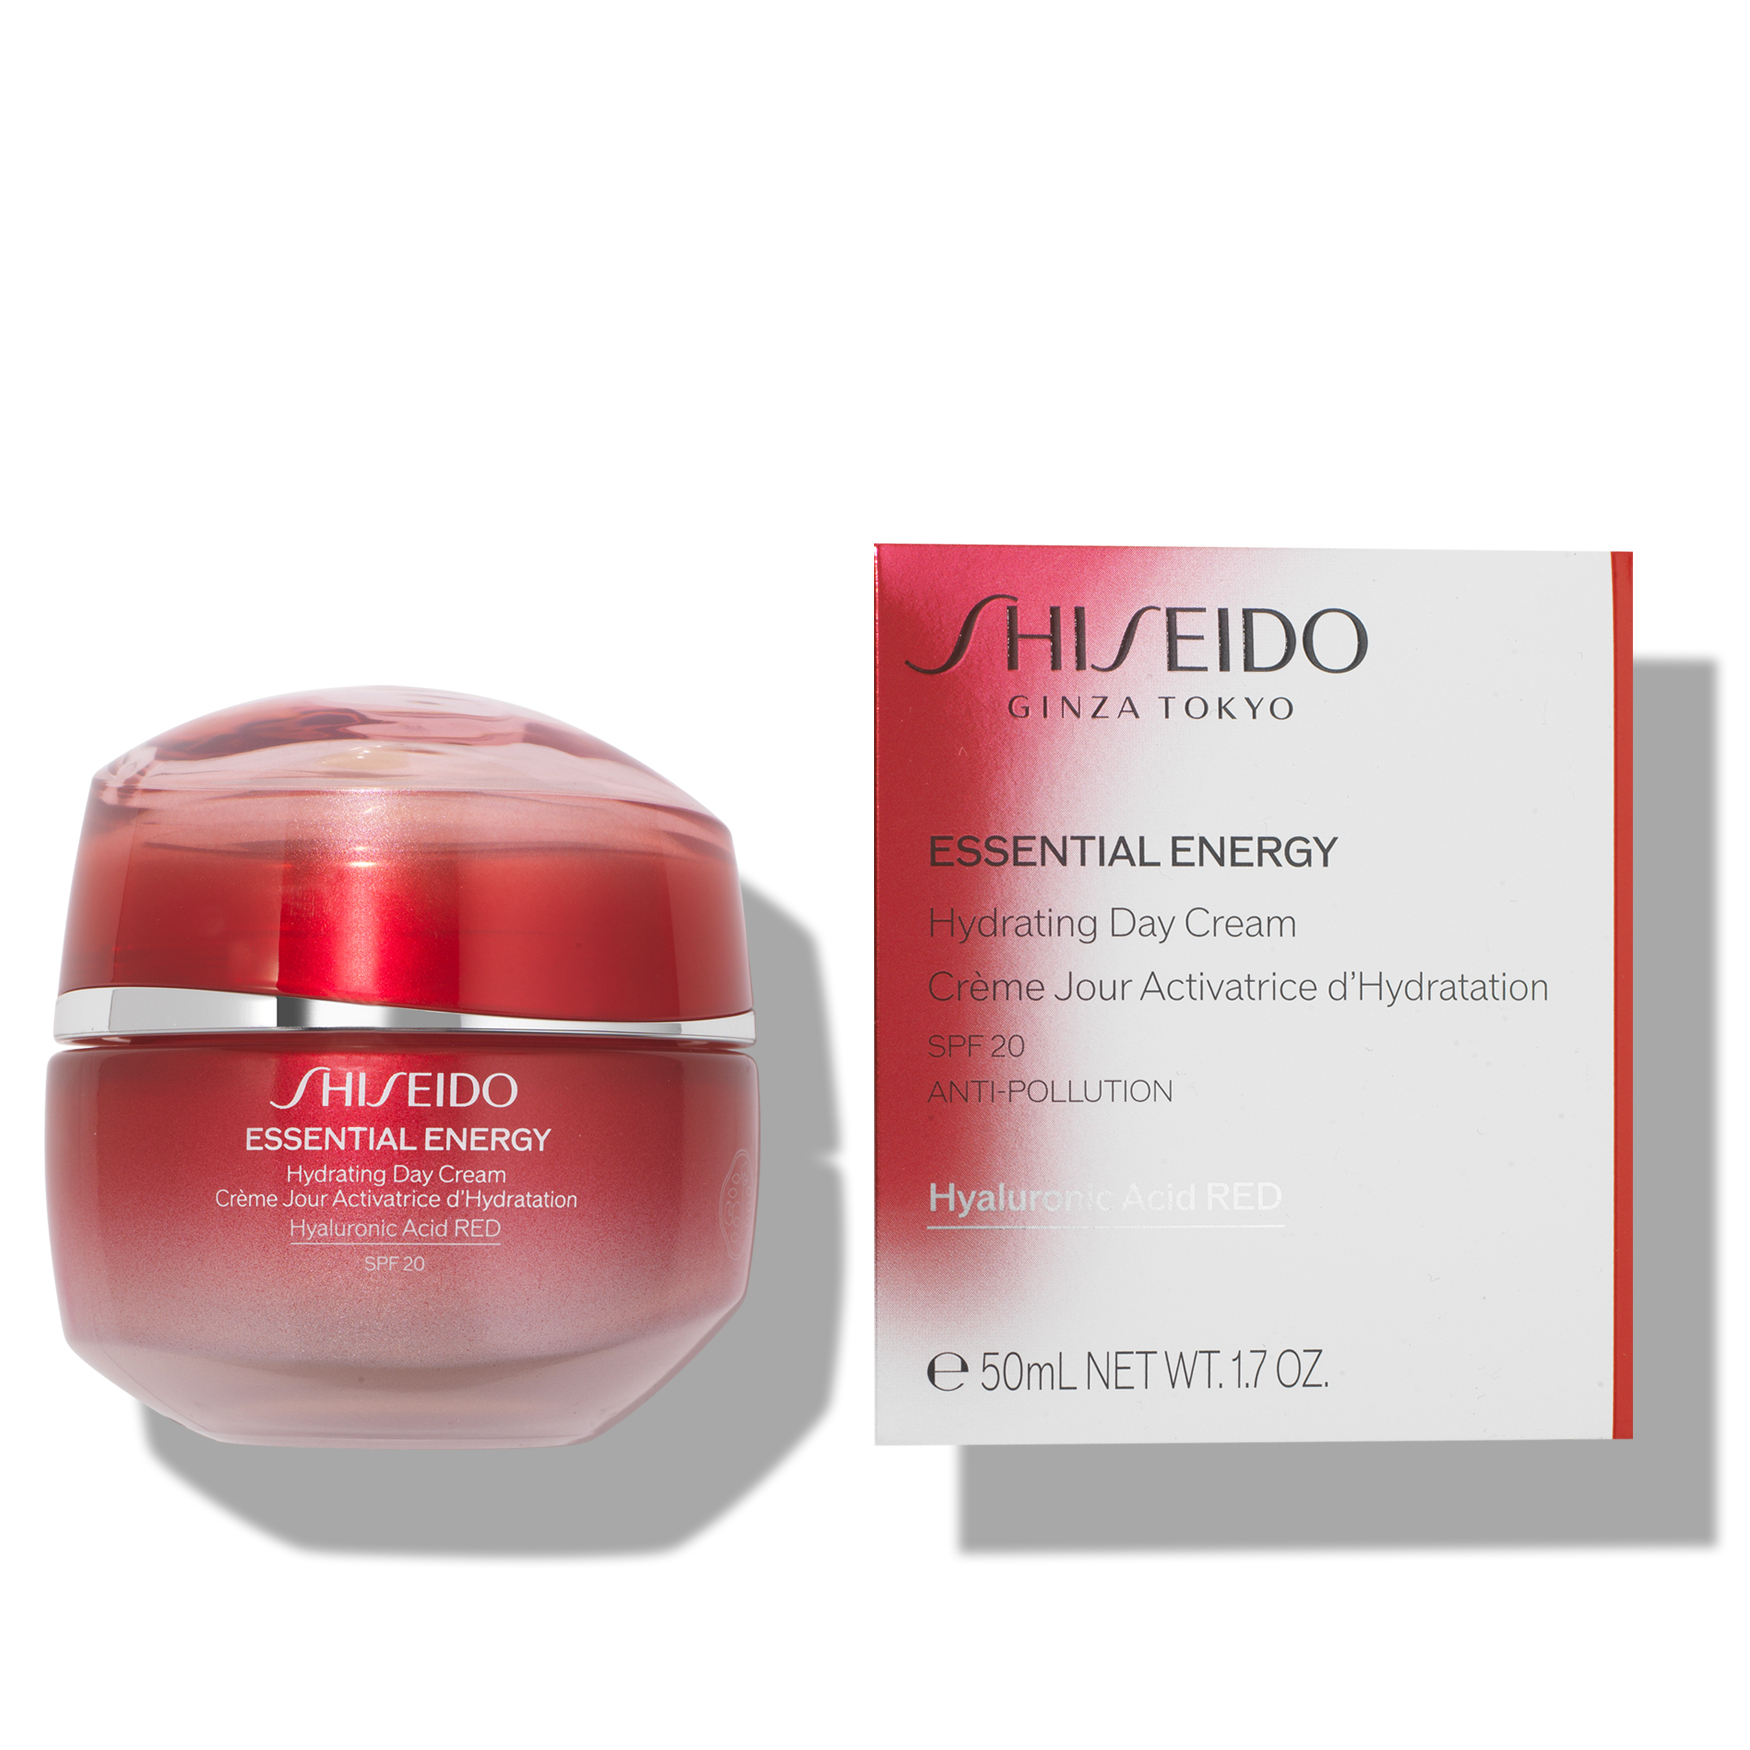 Шисейдо Essential Energy Hydrating Cream. Крем Shiseido суперувлаж. Shiseido Advanced Essential Energy логотип. Shiseido essential energy